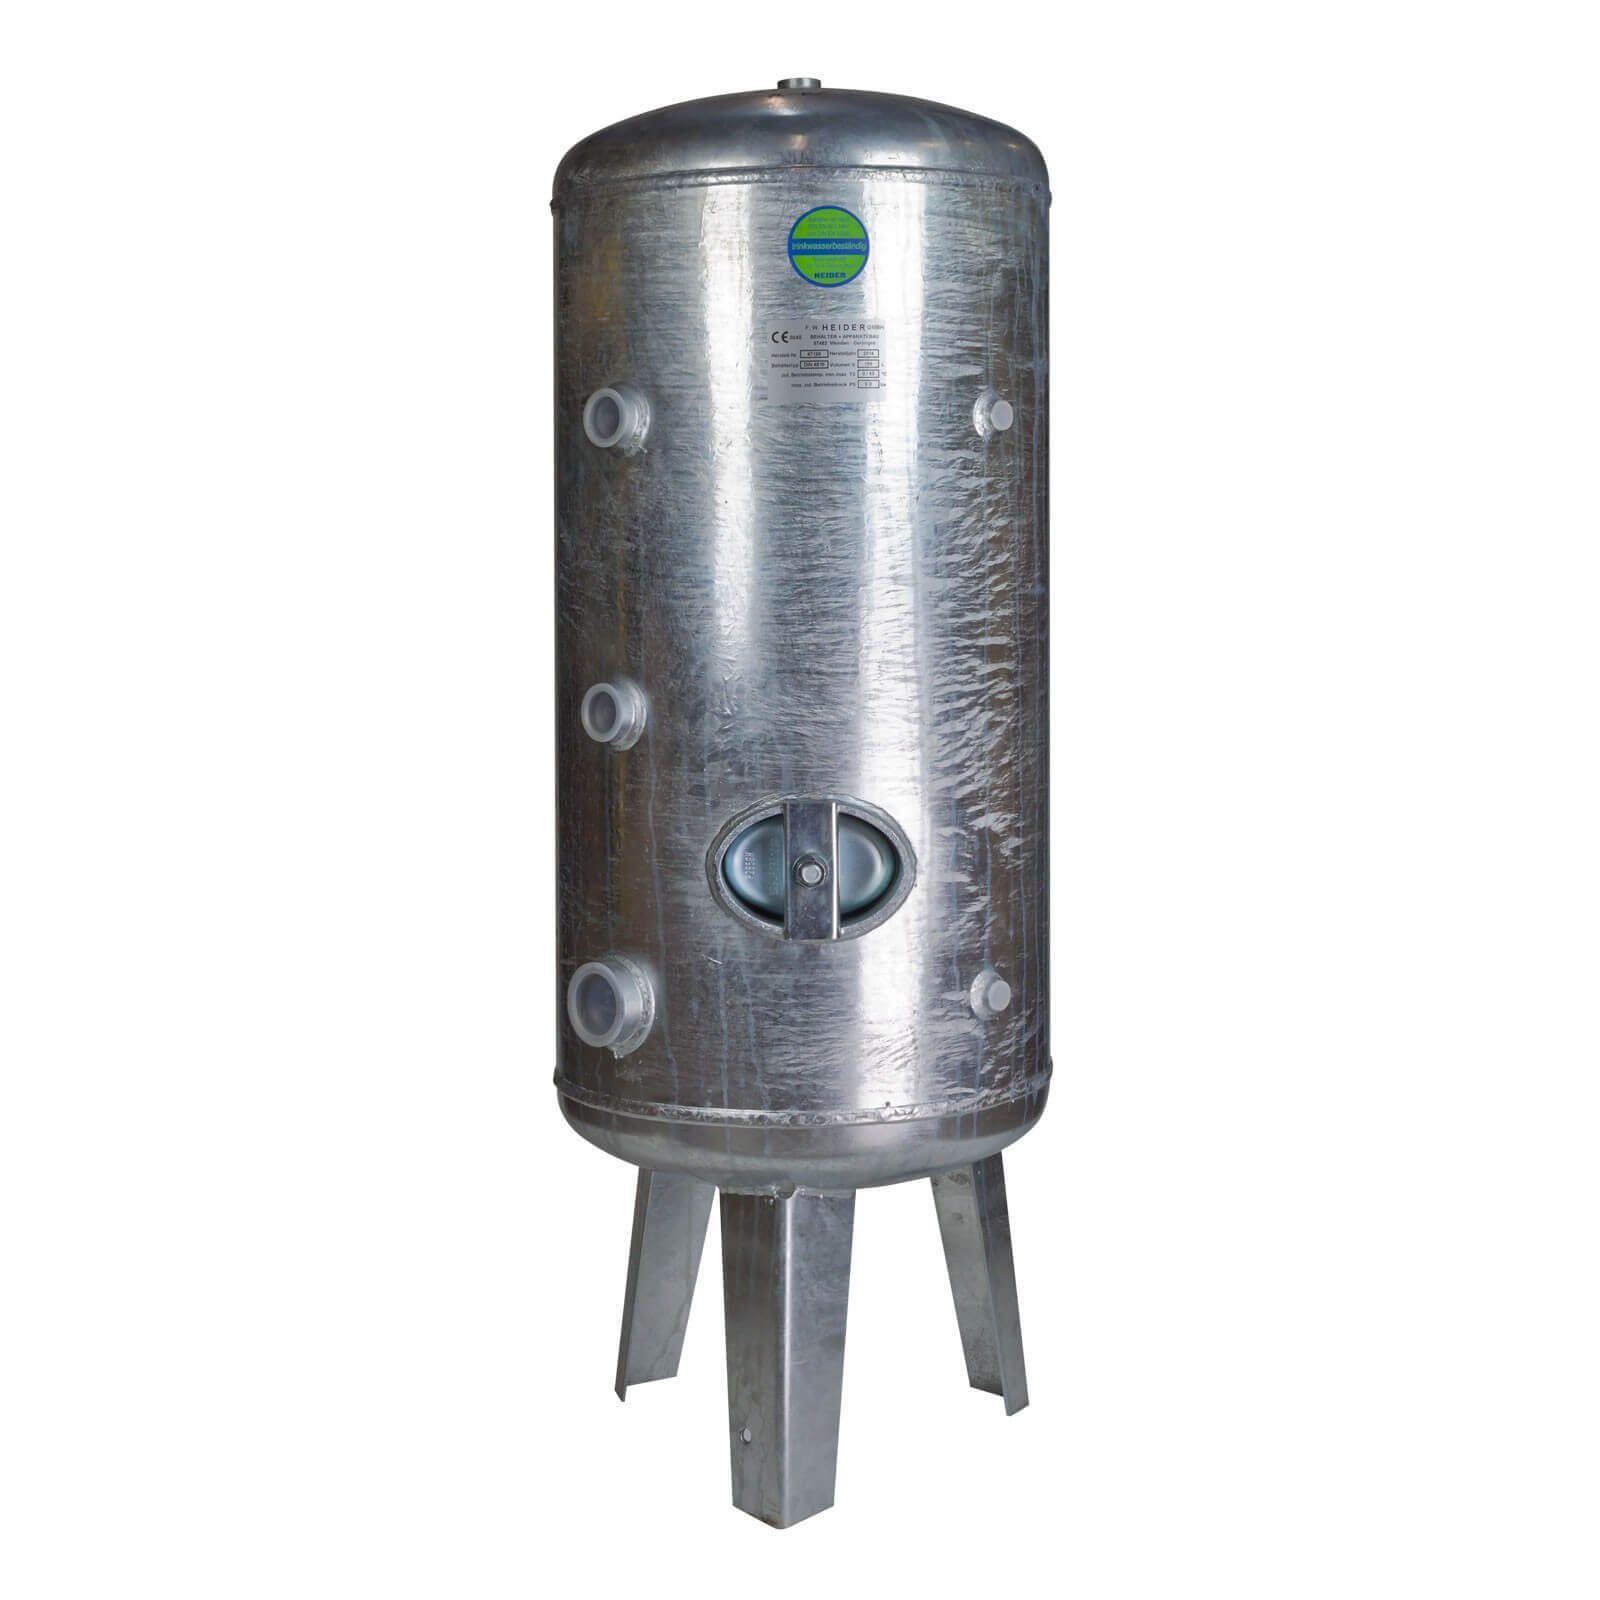 Heider Wasserkessel Heider Druckkessel Druckbehälter 500L 6 bar verzinkt für Wasser